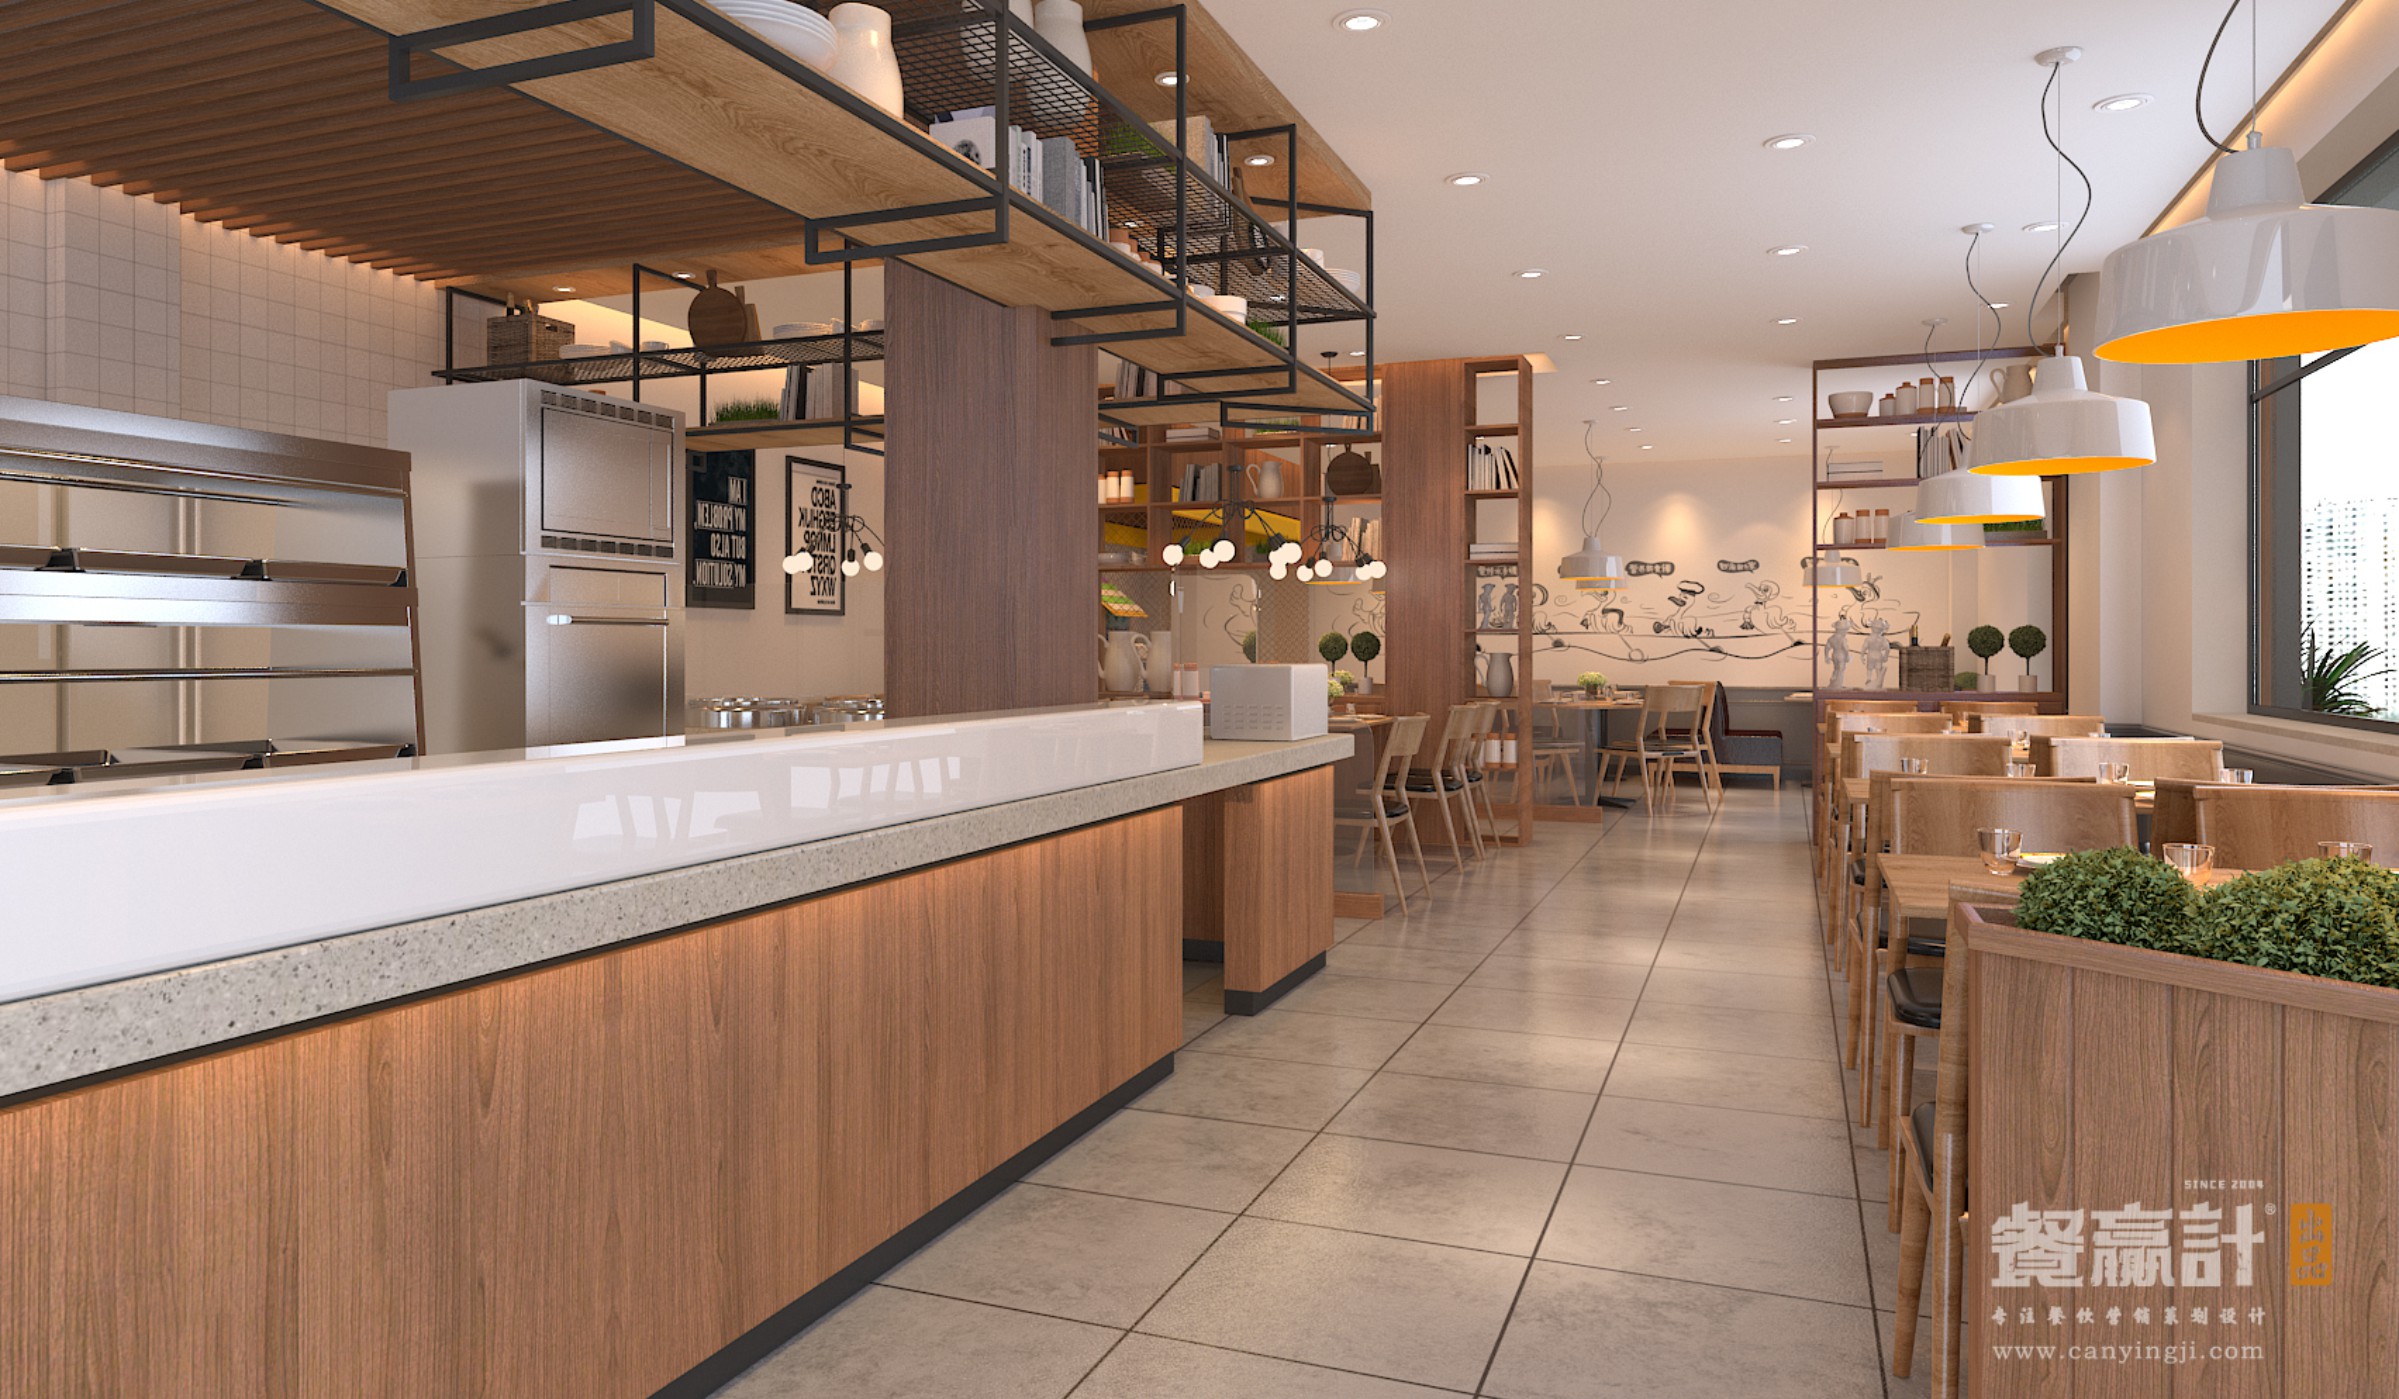 VI设计别的深圳餐饮设计公司为什么能做出成功的深圳餐饮空间设计？原因在这里